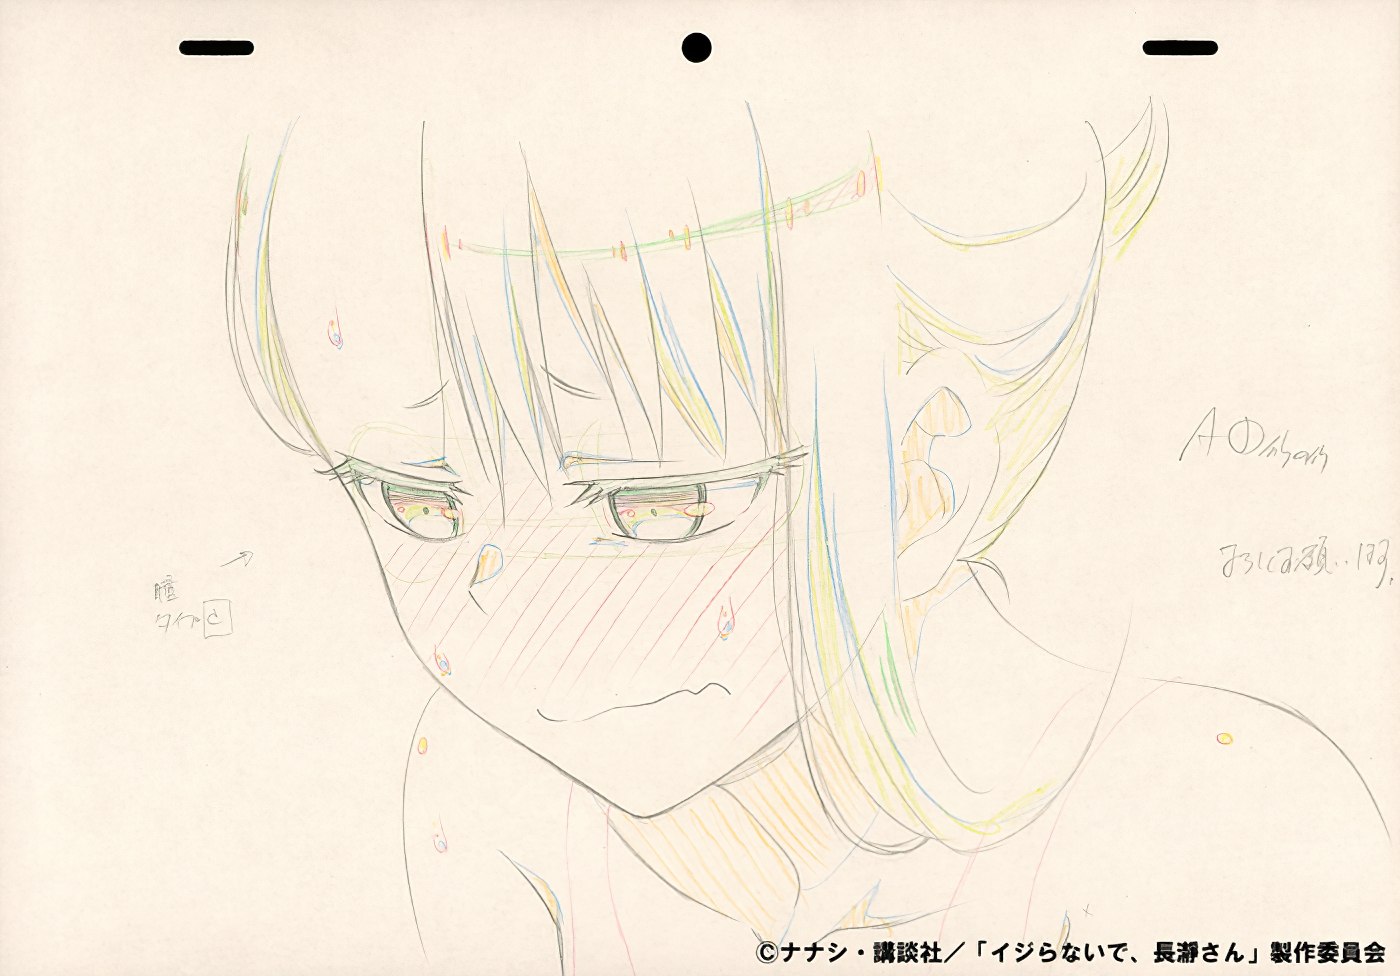 Hayase drawing pt. 2 : r/nagatoro